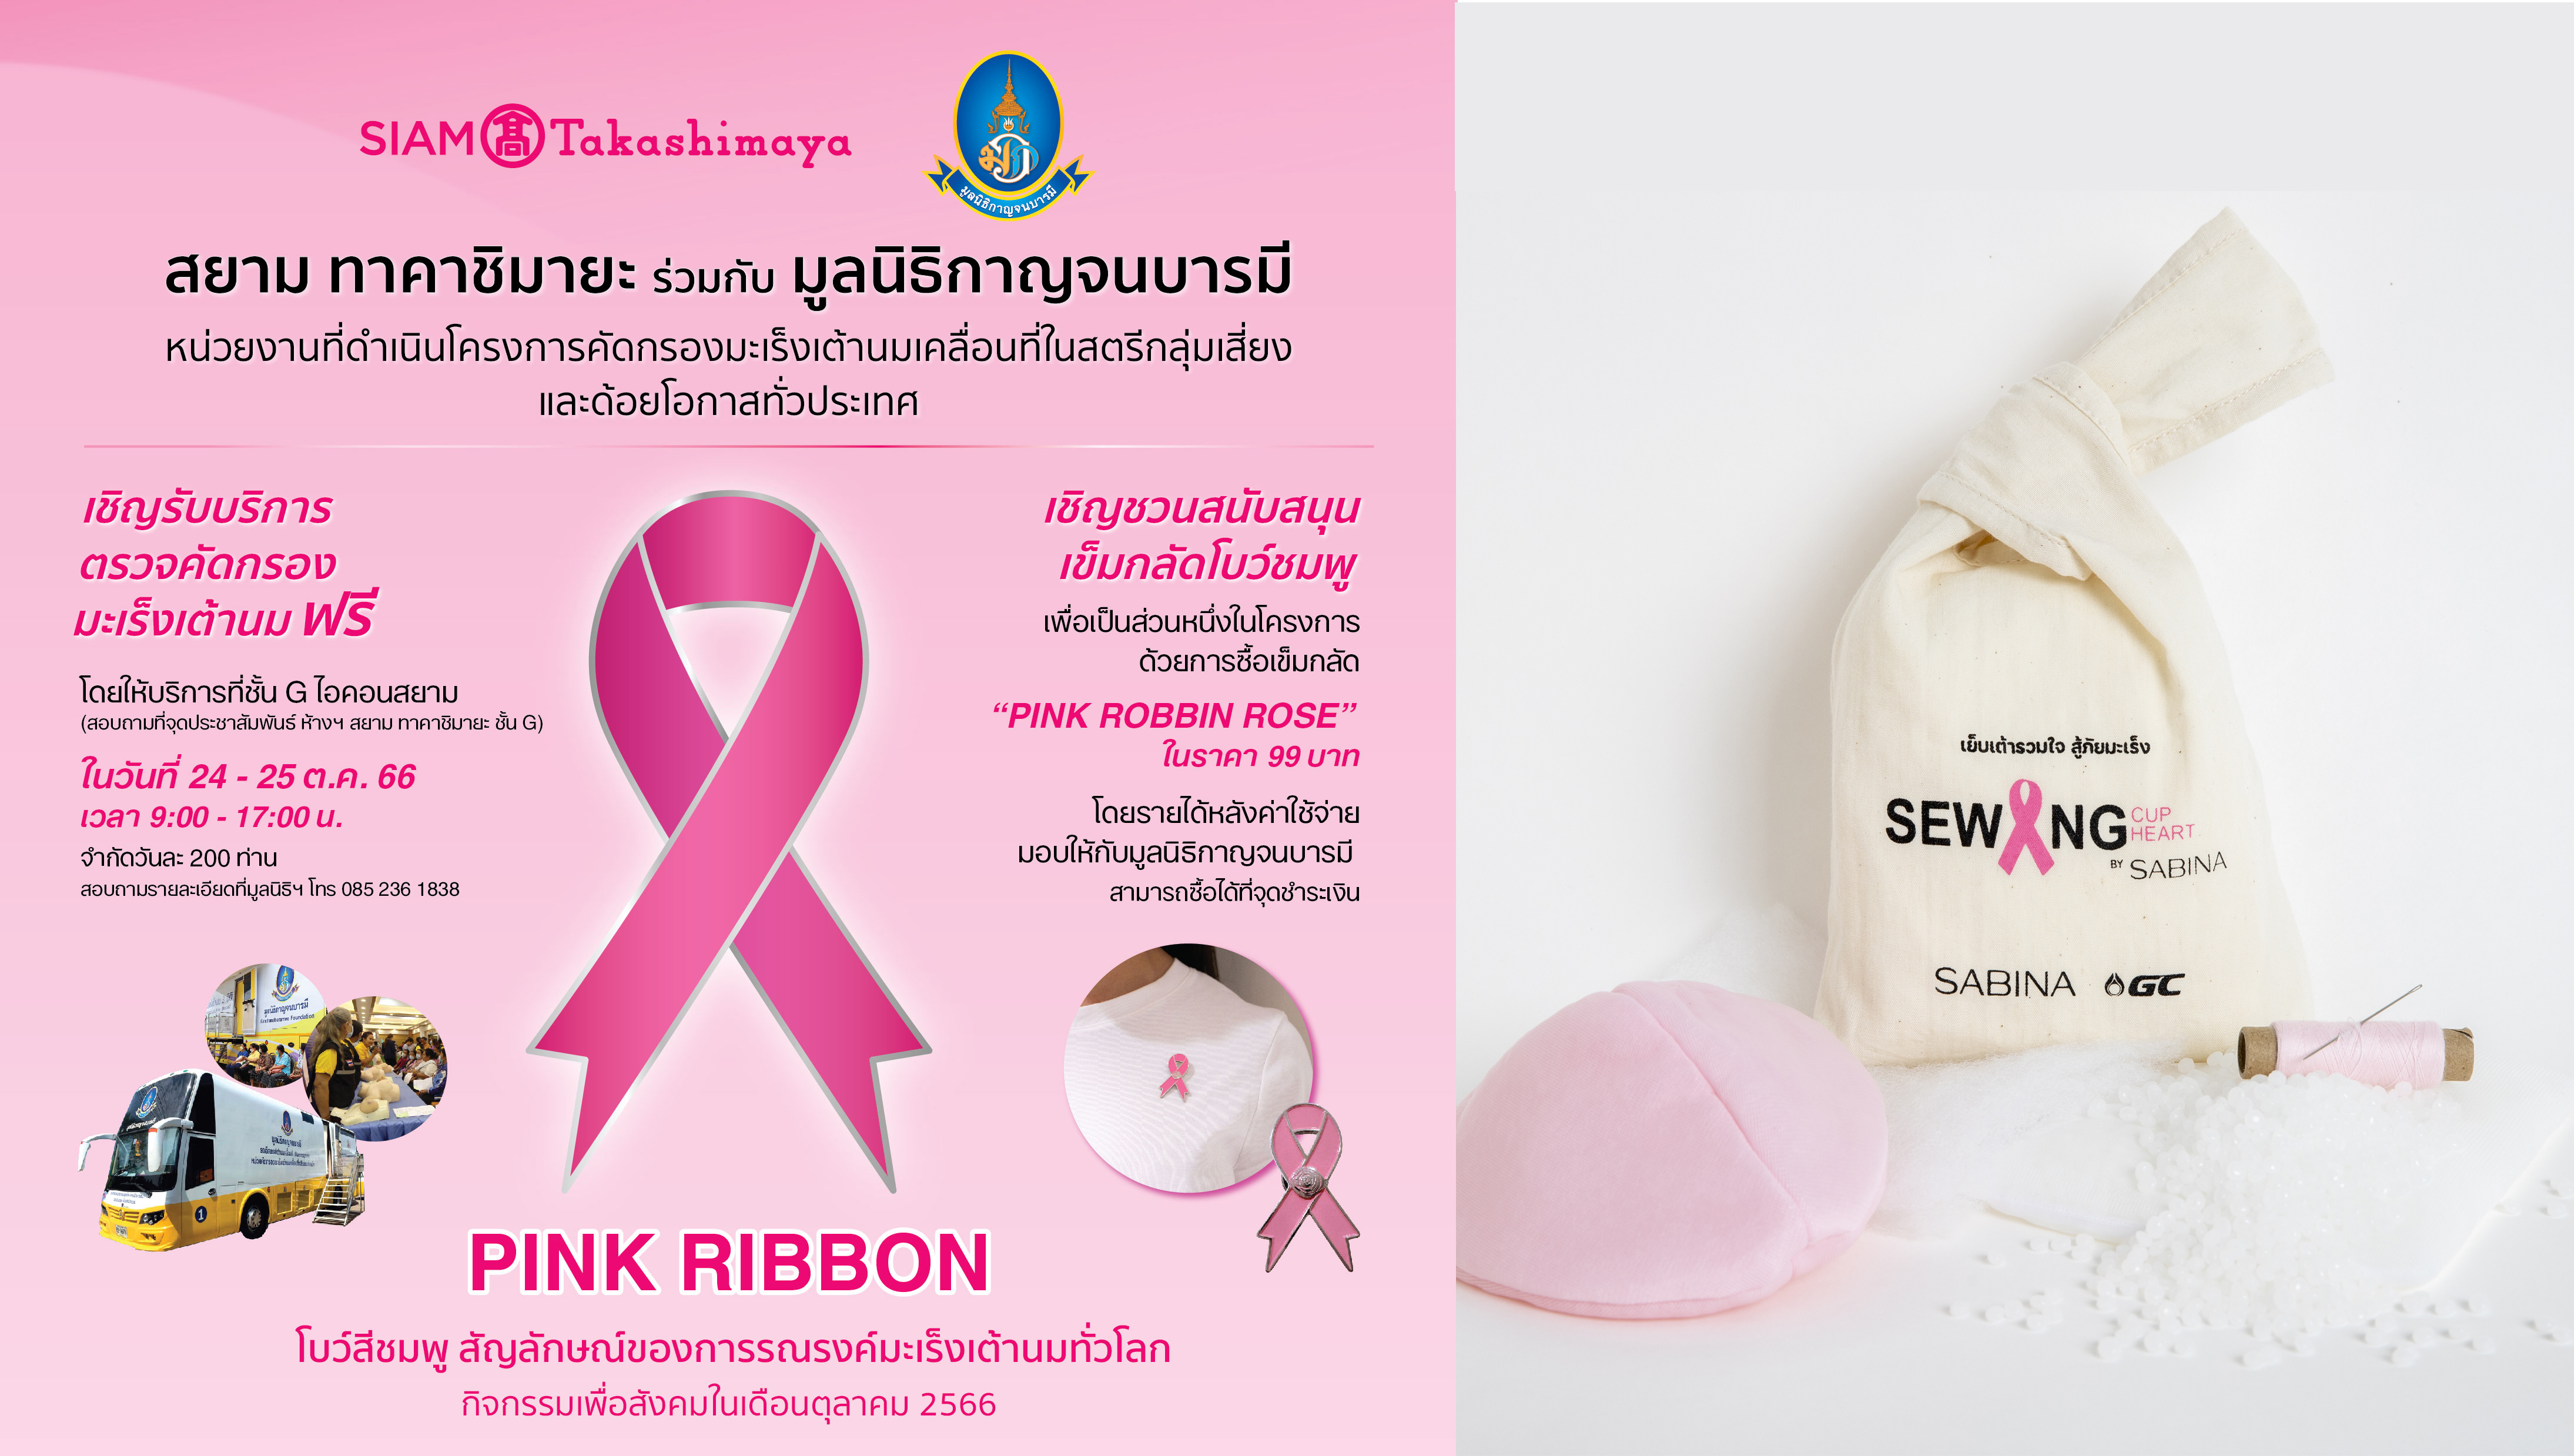 ซาบีน่า ร่วมกับห้างสรรพสินค้าสยาม ทาคาชิมายะ ในแคมเปญ “PINK RIBBON” รณรงค์ให้ผู้หญิงทุกคนตระหนักถึงภัยจากโรคมะเร็งเต้านม